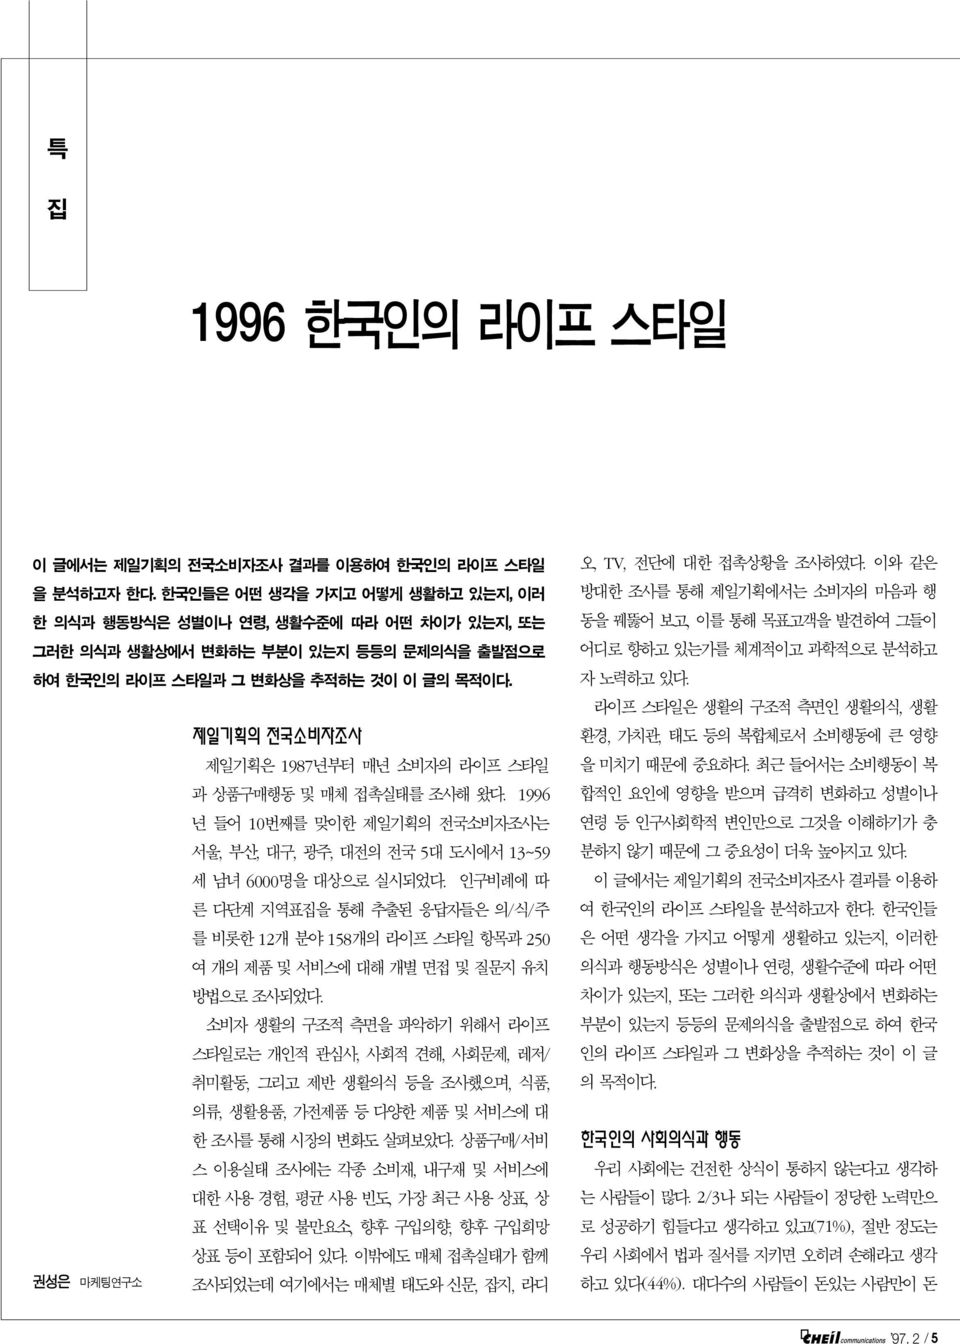 권성은 마케팅연구소 제일기획의 전국소비자조사 제일기획은 1987년부터 매년 소비자의 라이프 스타일 과 상품구매행동 및 매체 접촉실태를 조사해 왔다. 1996 년들어 10번째를 맞이한 제일기획의 전국소비자조사는 서울, 부산, 대구, 광주, 대전의 전국 5대 도시에서 13~59 세남녀 6000명을 대상으로 실시되었다.